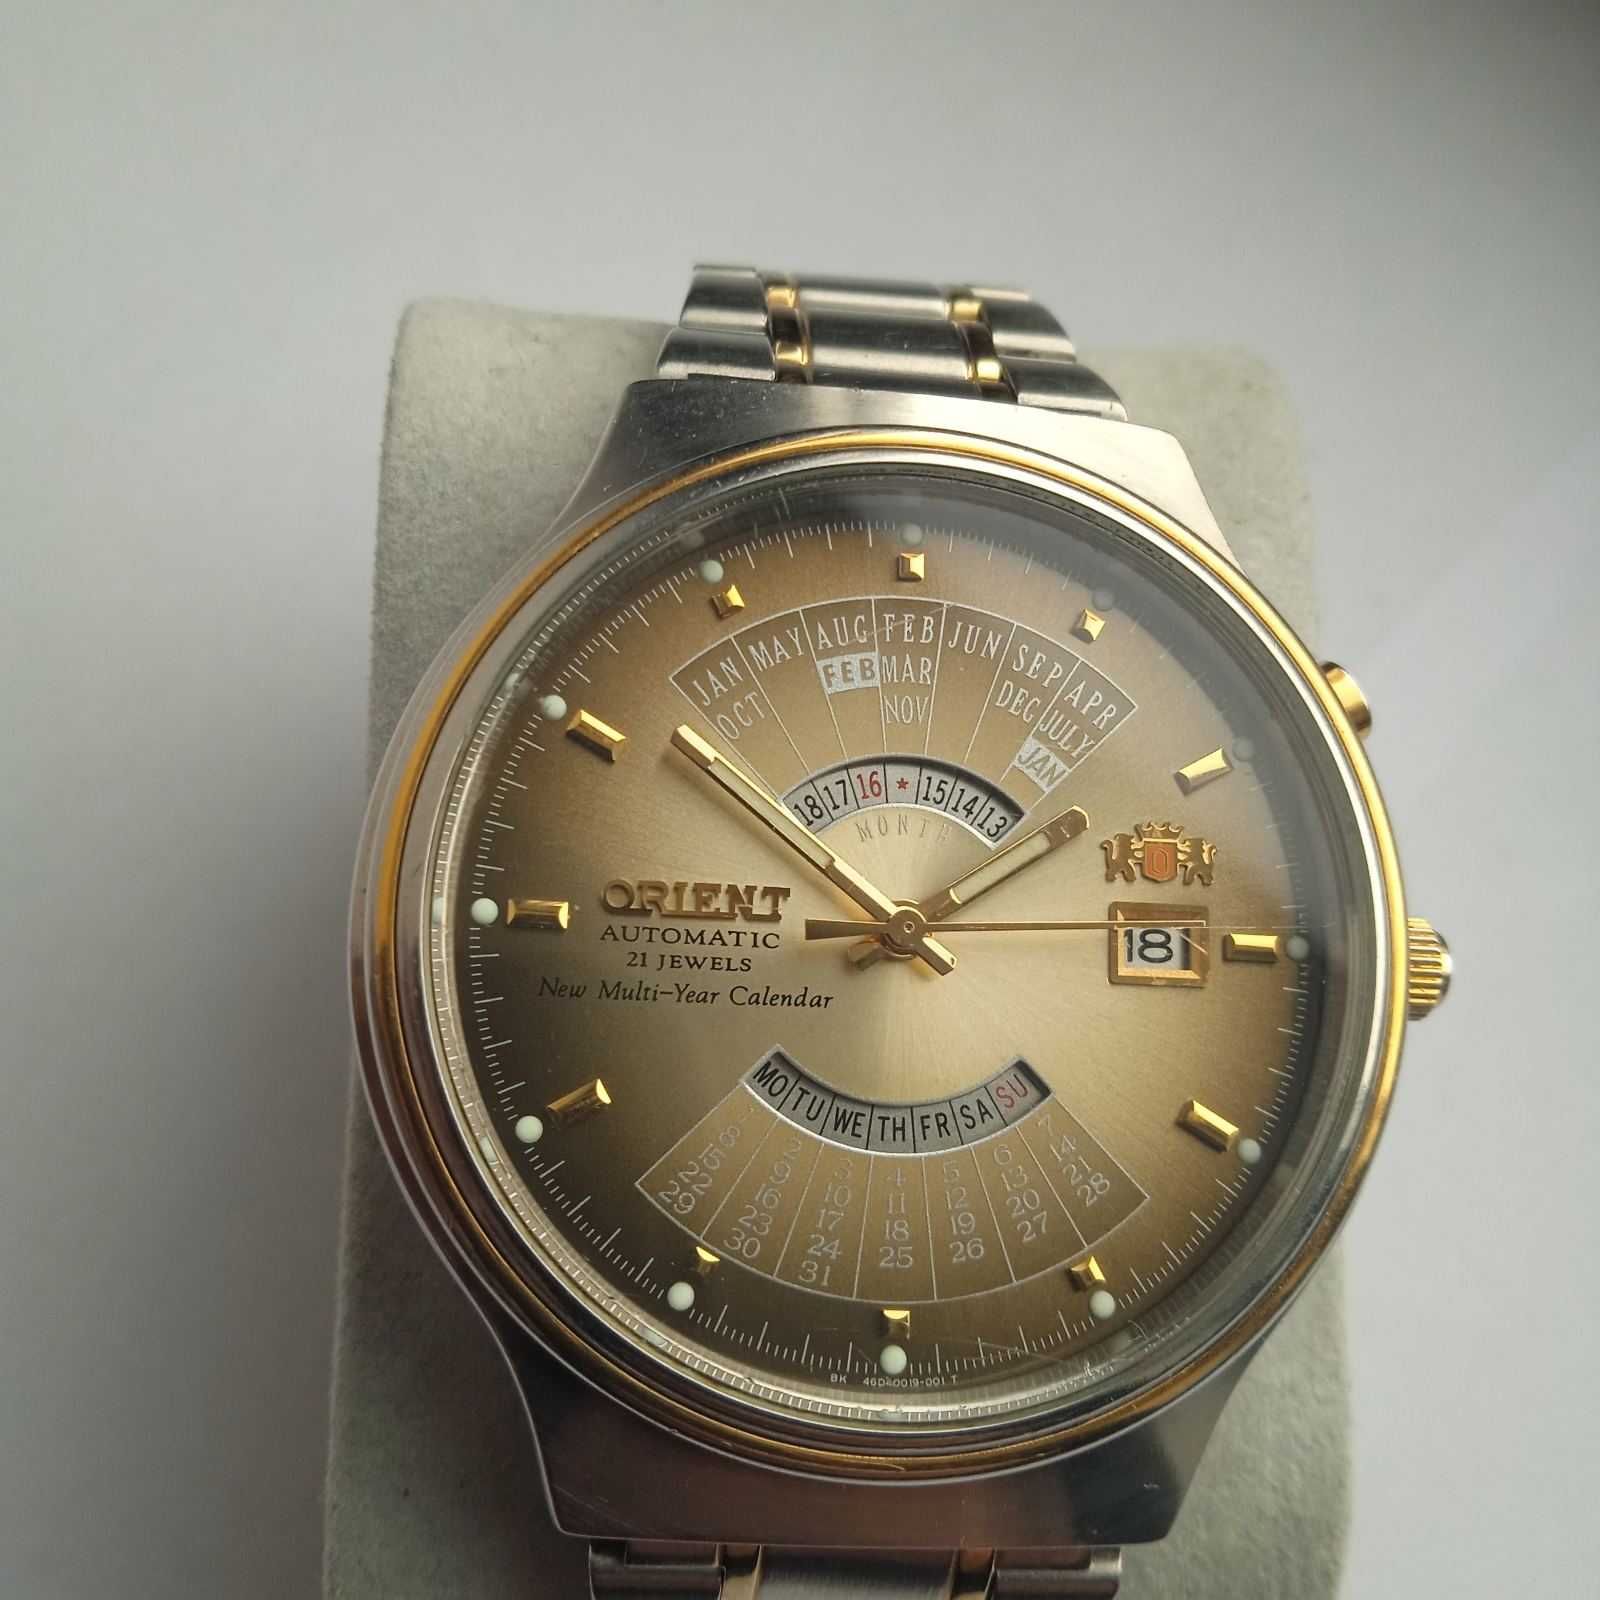 Zegarek japoński Orient patelnia 50m